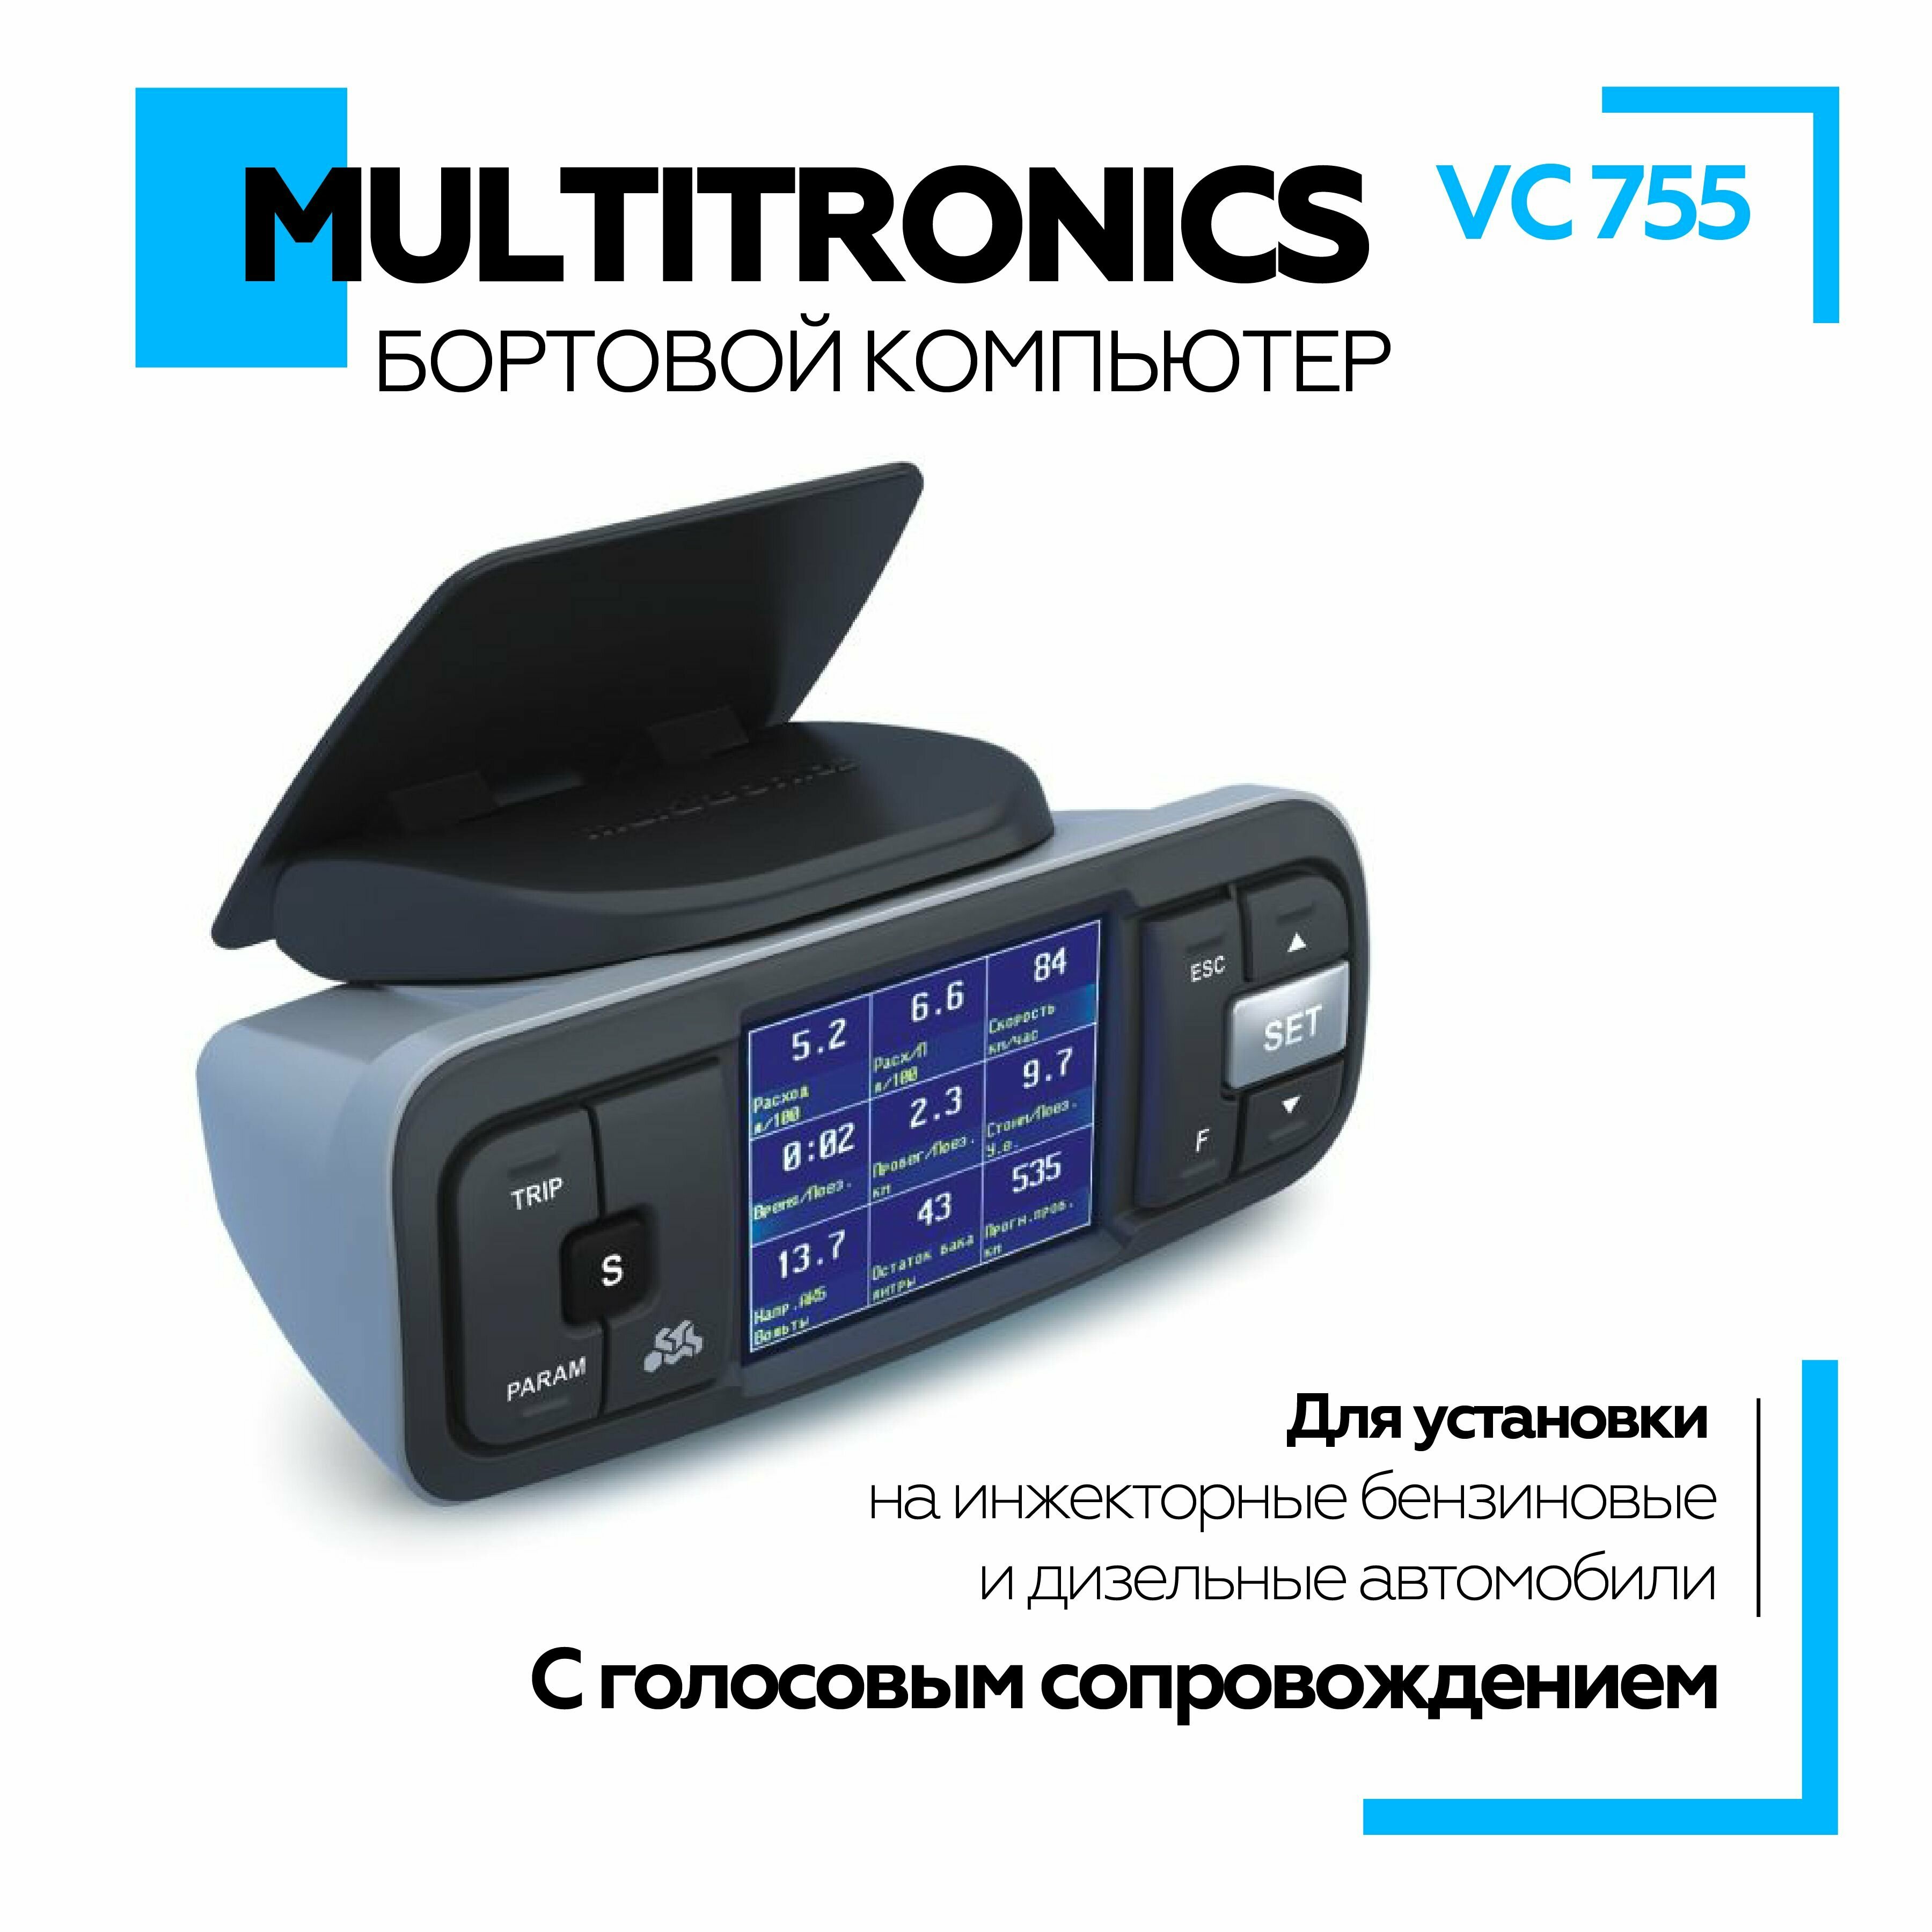 Бортовой компьютер Multitronic VC-755 для Nissan Toyota Mitsubishi Honda и ГАЗ для контроля и диагностики состояния автомобиля